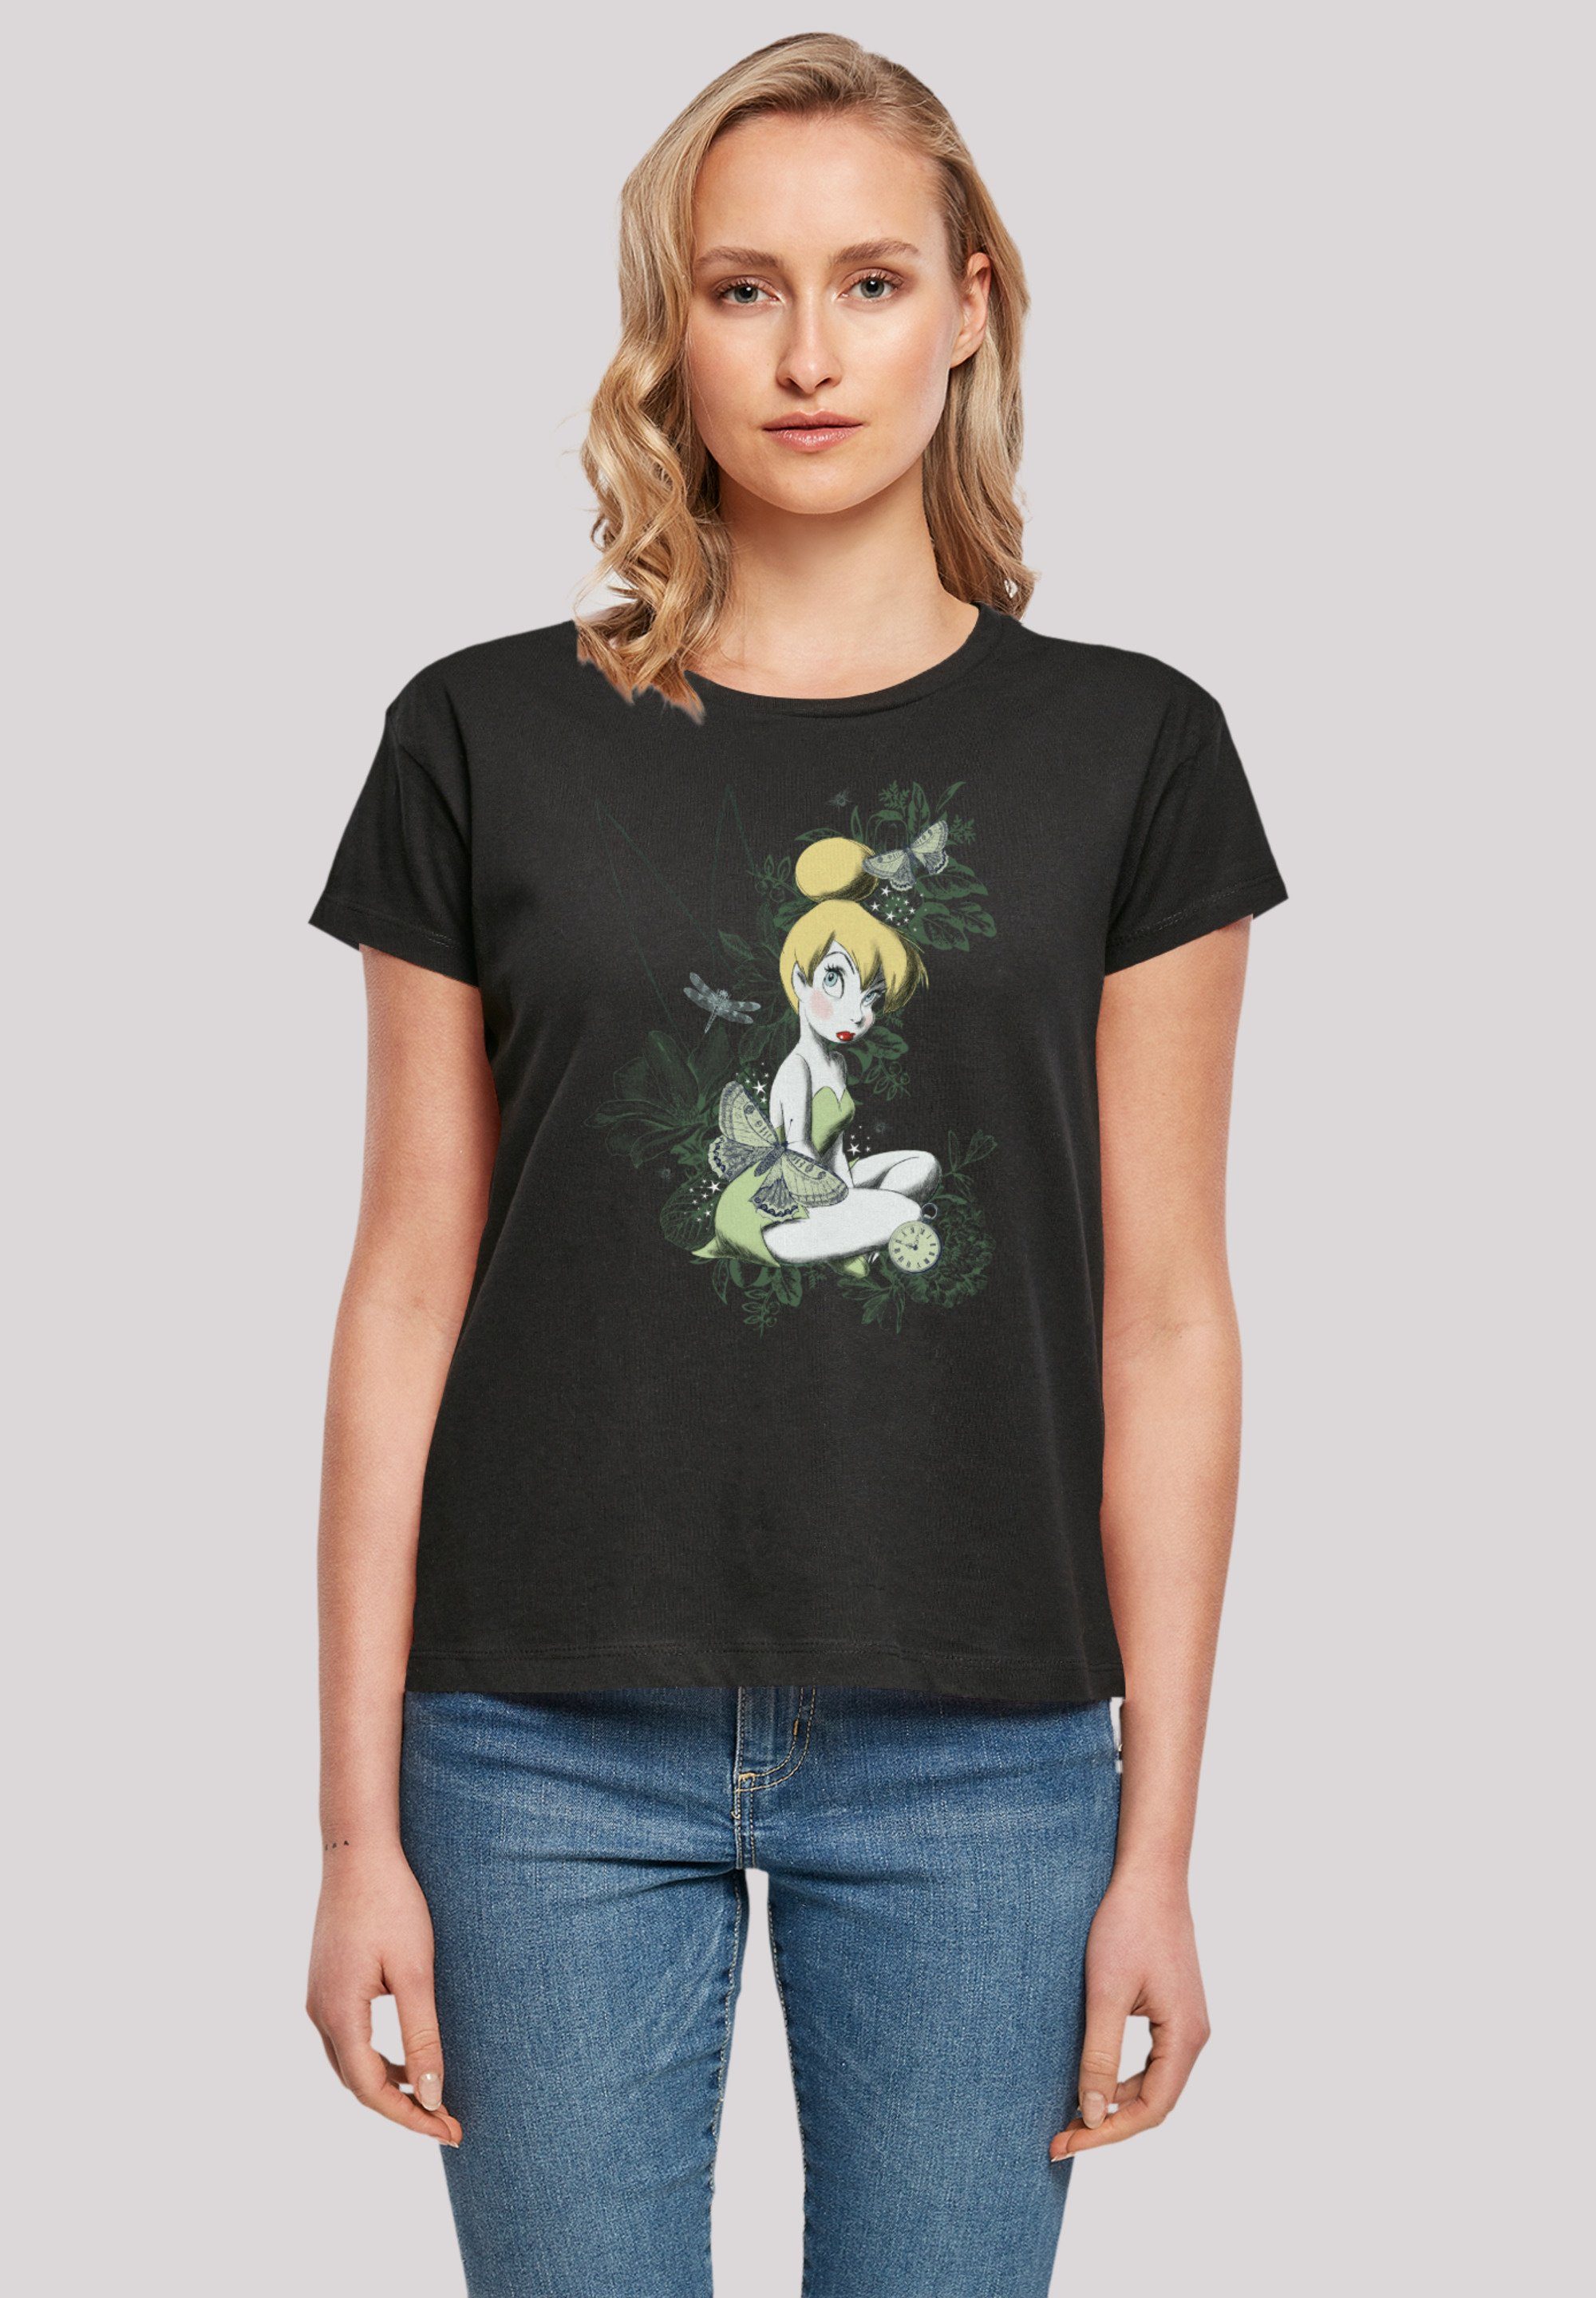 F4NT4STIC T-Shirt Disney Peter Pan Life und hochwertige Perfekte Premium Passform Verarbeitung Fairy Good Qualität